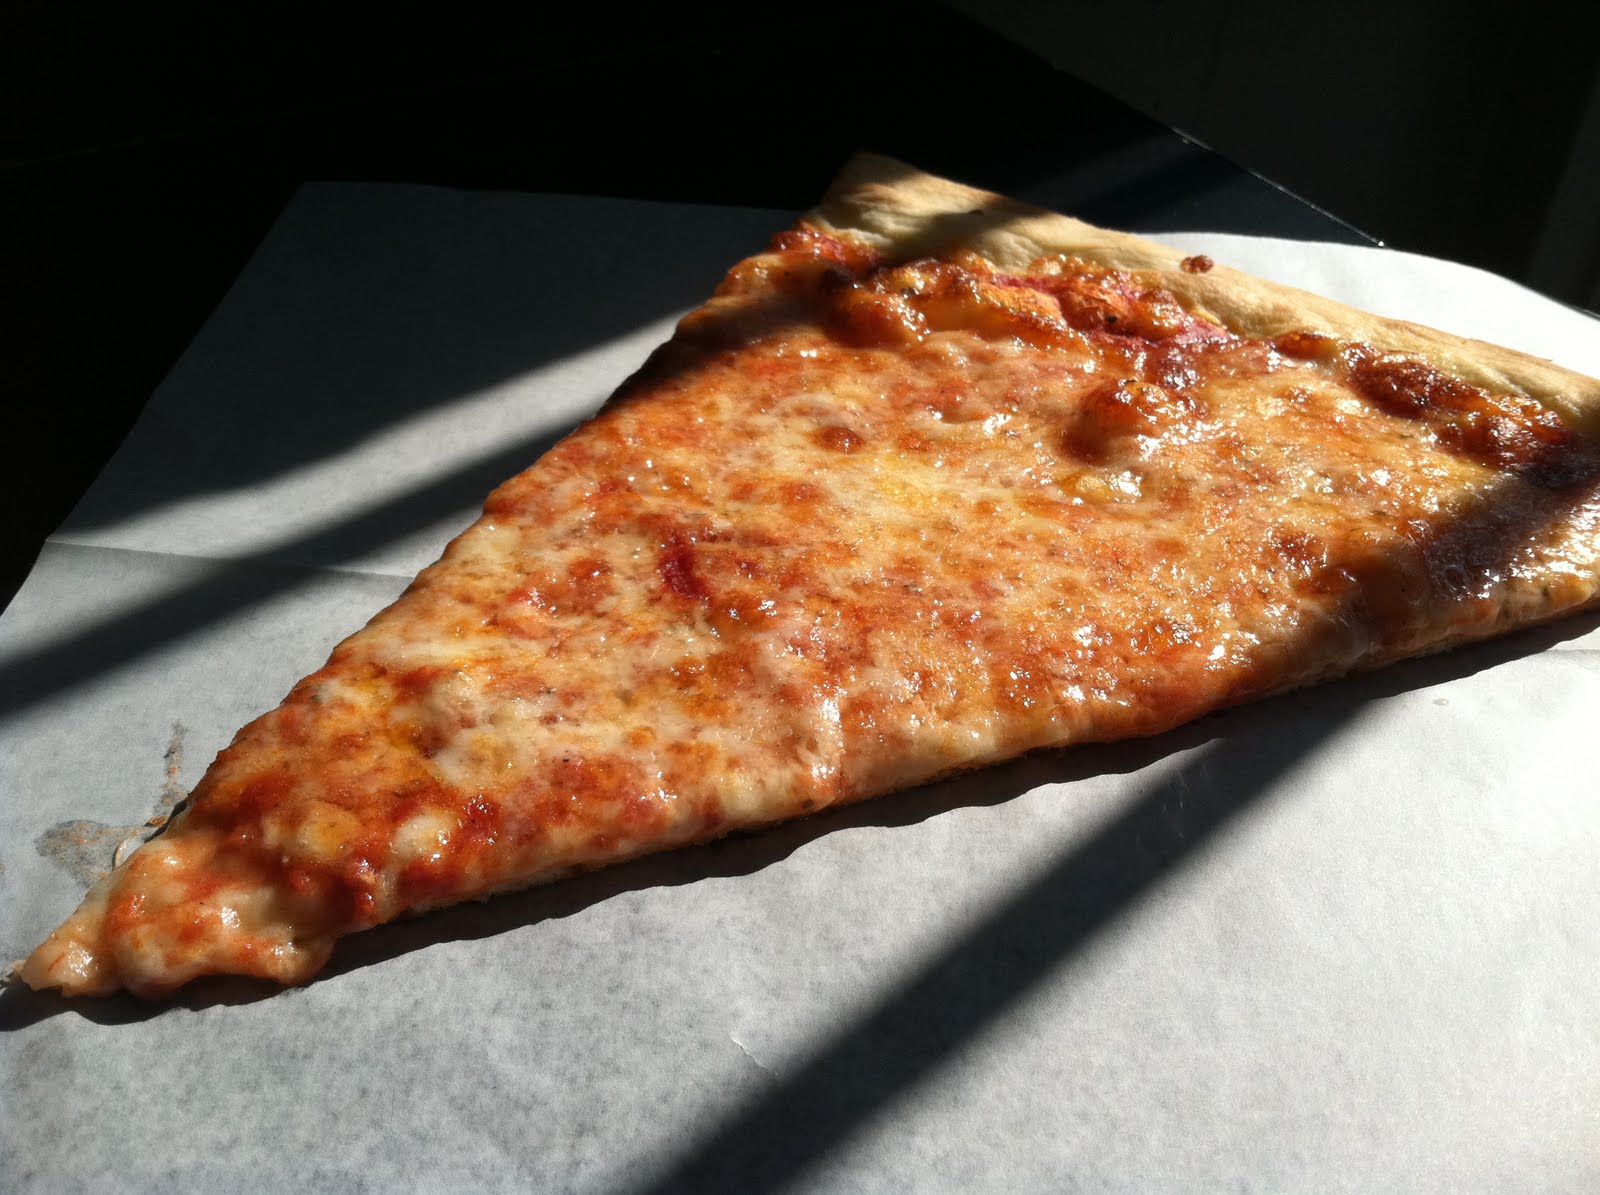 PIZZA FACTORY LOCATED AT LONG ISLAND CITY NY : PLAIN NEAPOLITAN CHEESE PIZZA SLICE